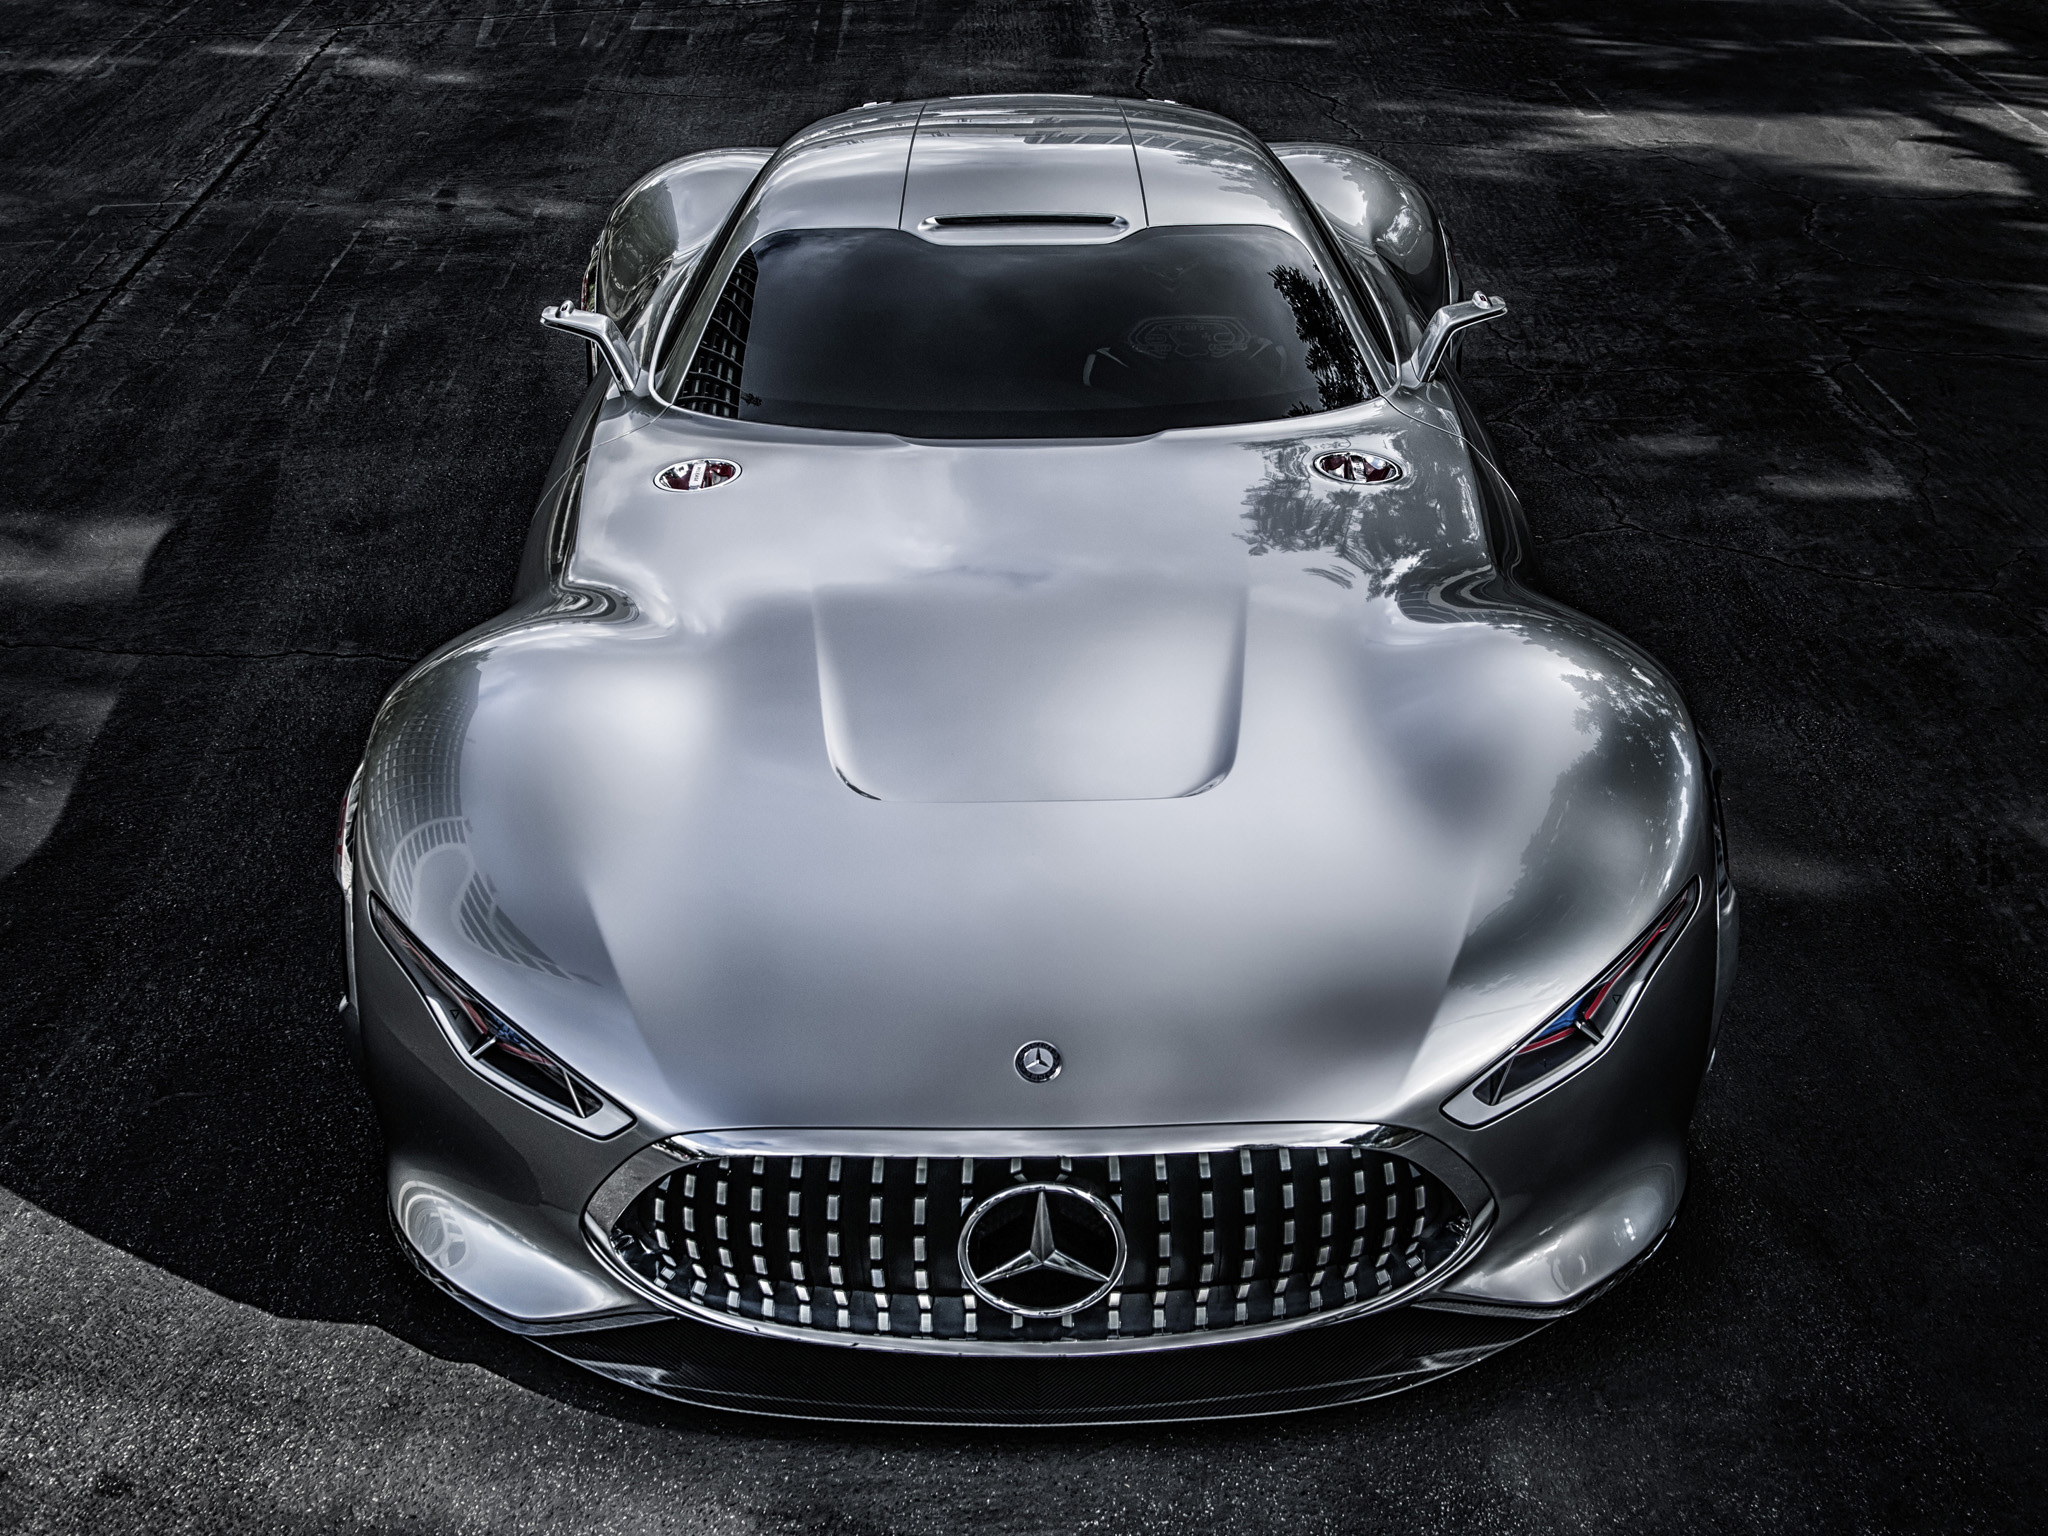 2014, Mercedes, Benz, Amg, Vision, Gran, Turismo, Concept